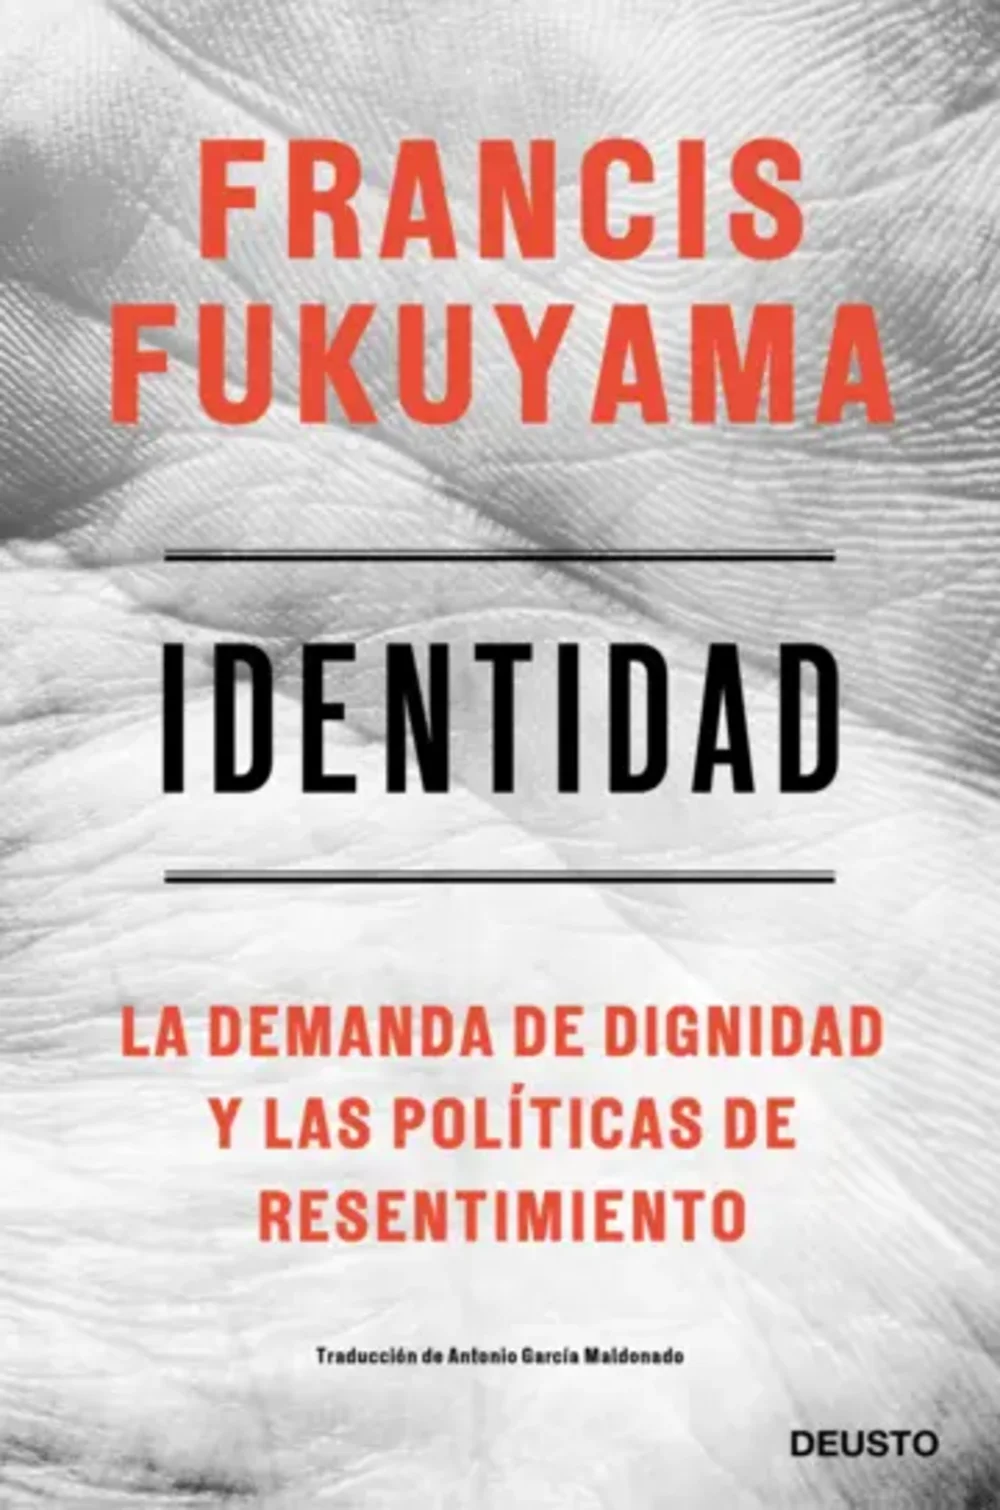 Identidad. La demanda de dignidad y las políticas de resentimientoFukuyama, Francis